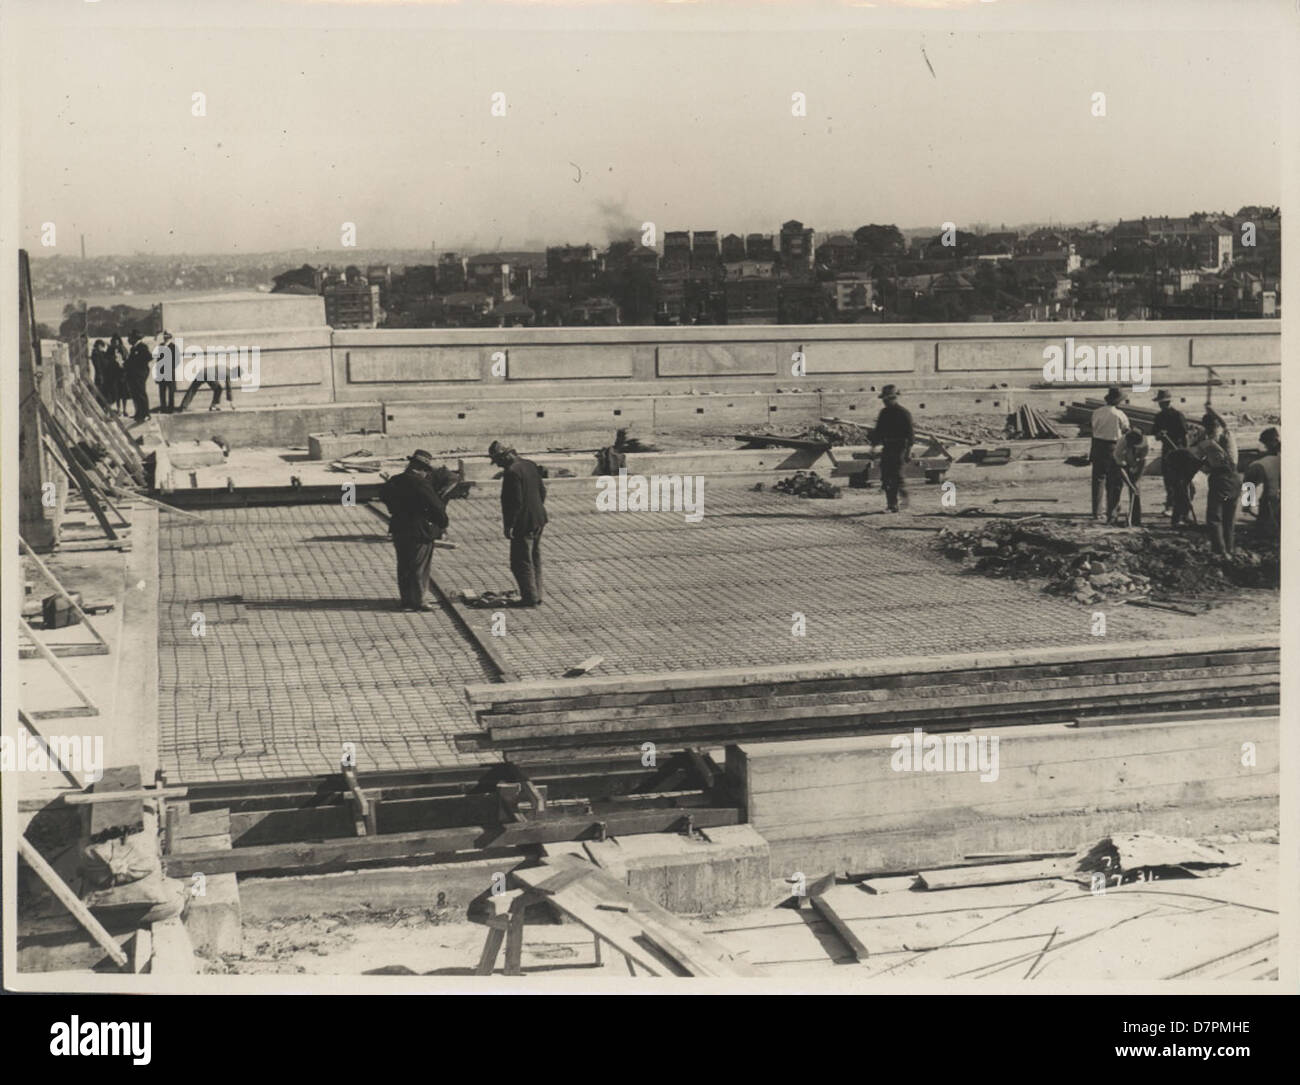 87/1353-93 impression photographique, vue de la pose de la surface de la chaussée le Sydney Harbour Bridge, de l'argent / gélatine / papier, photographie de la Nouvelle Galles du sud Ministère des Travaux publics, Sydney, Australie, 1931 Banque D'Images